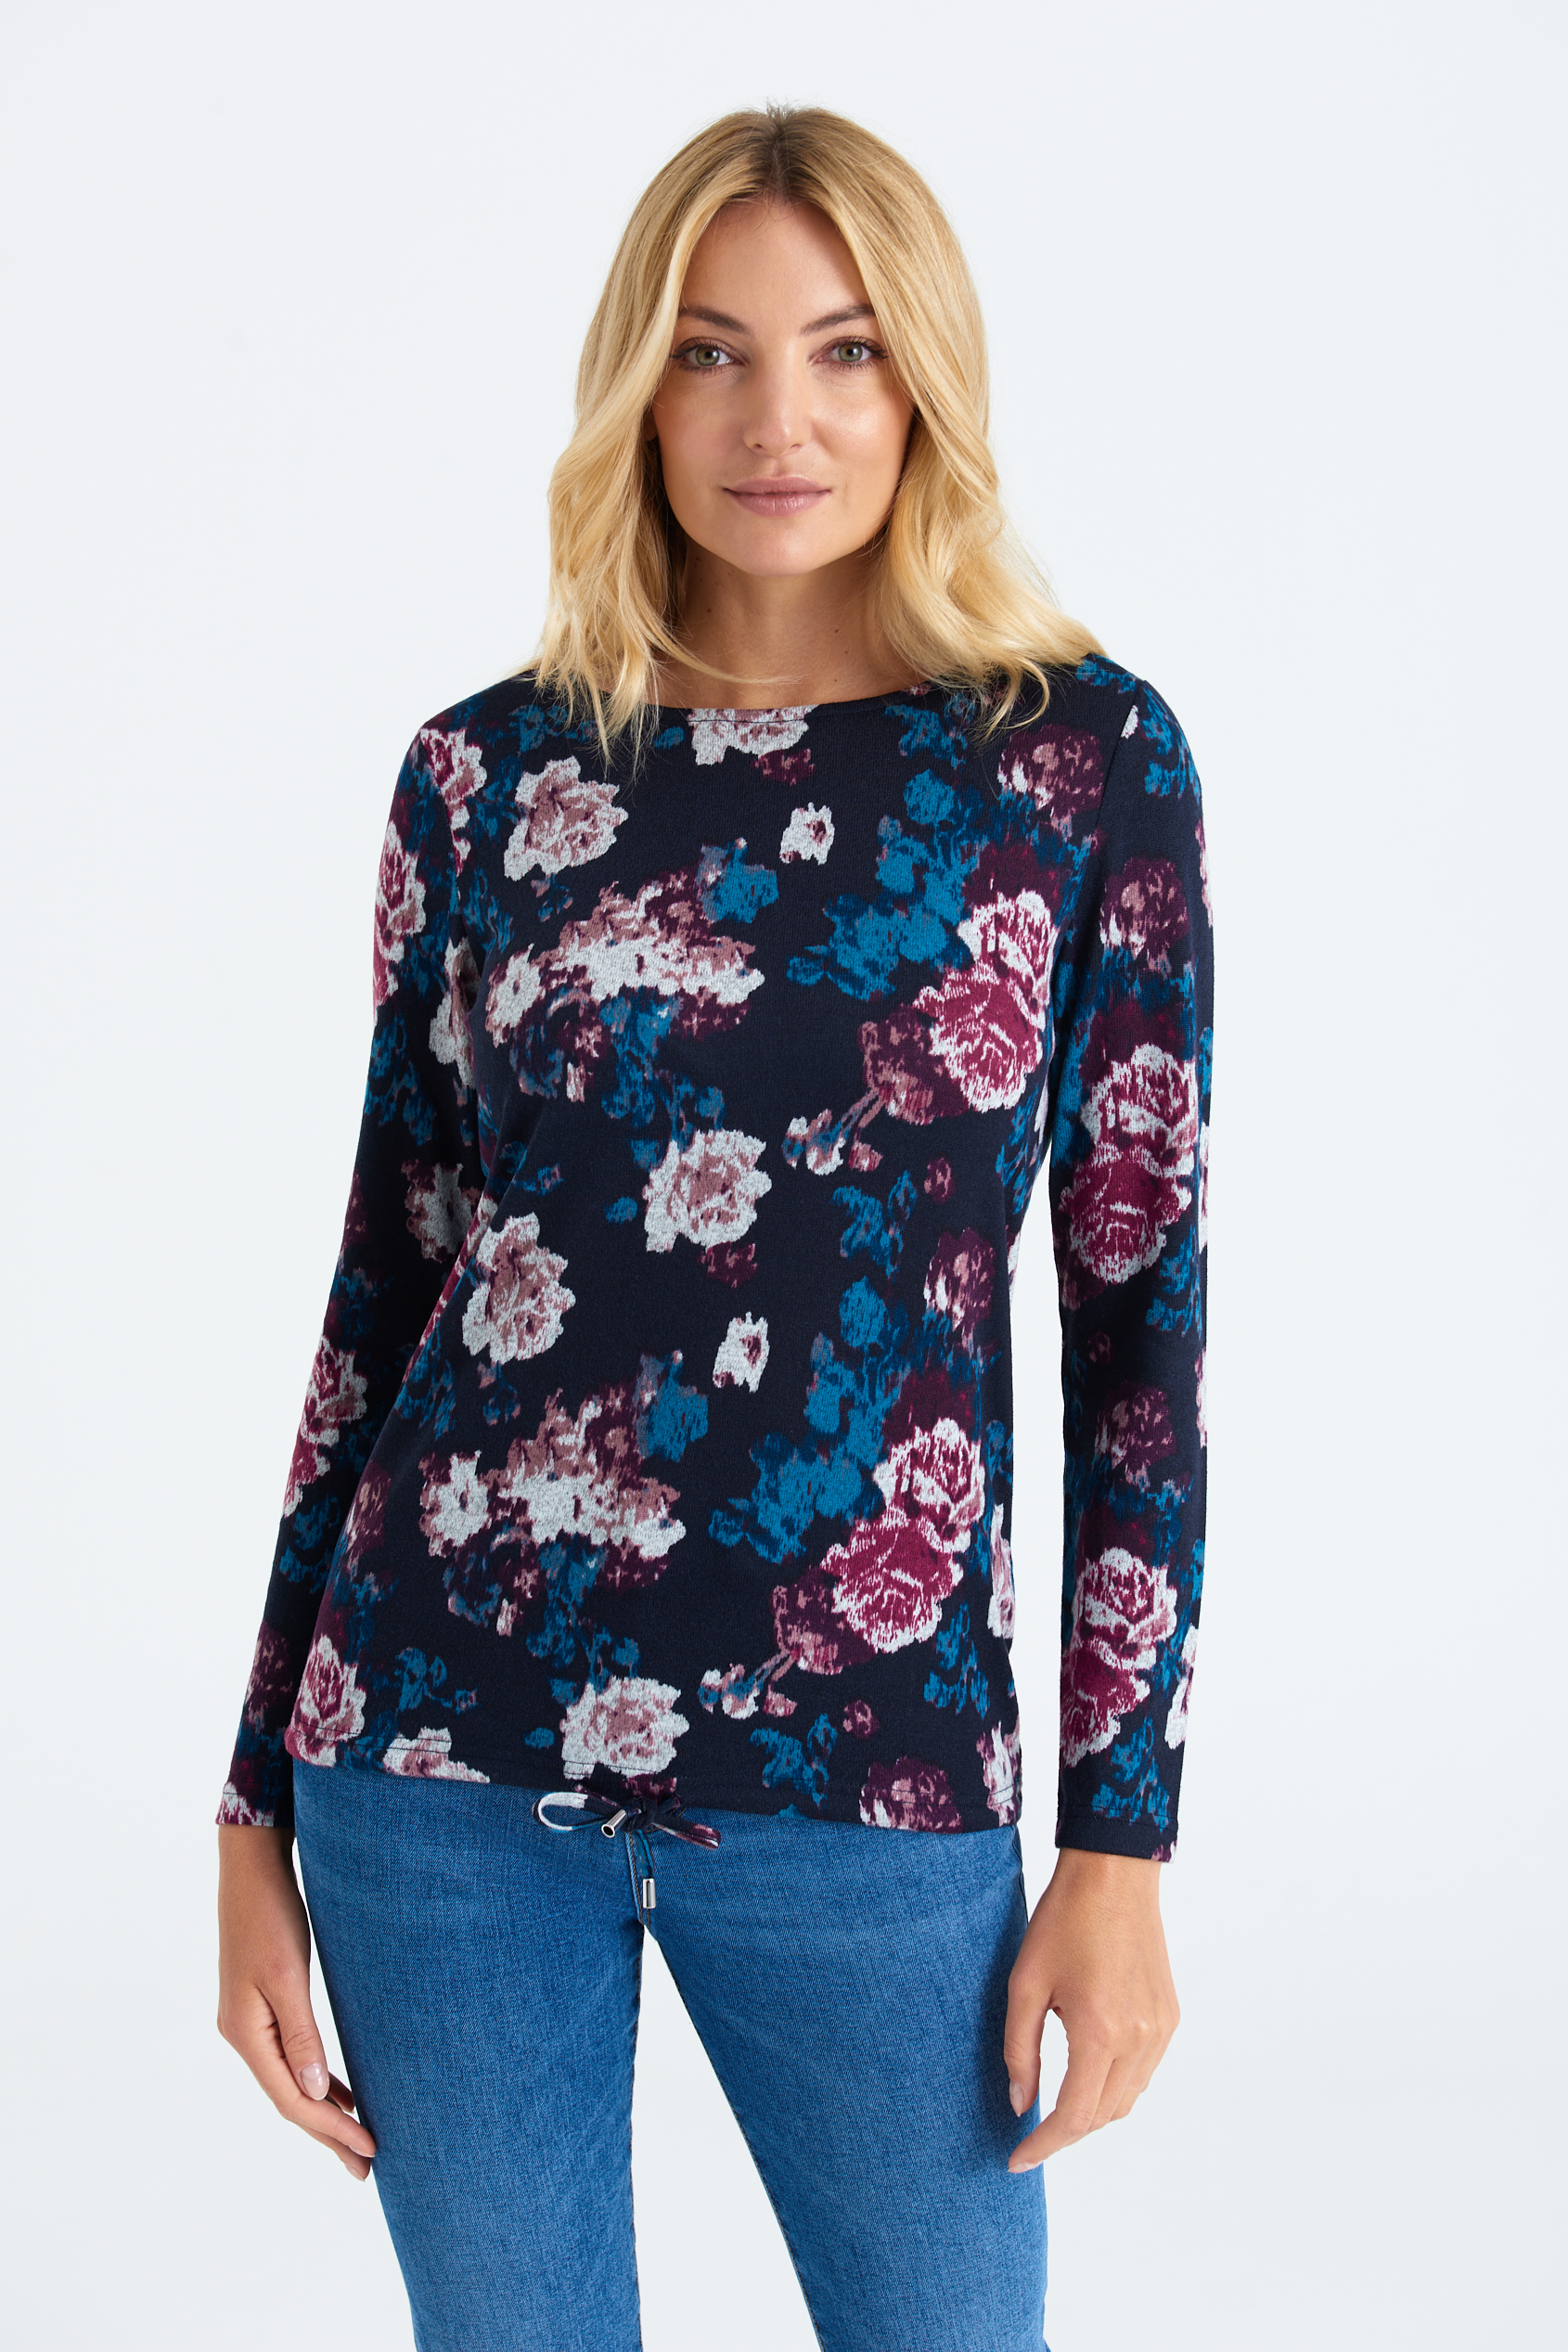 Prosty sweter w różowo-błękitne kwiaty